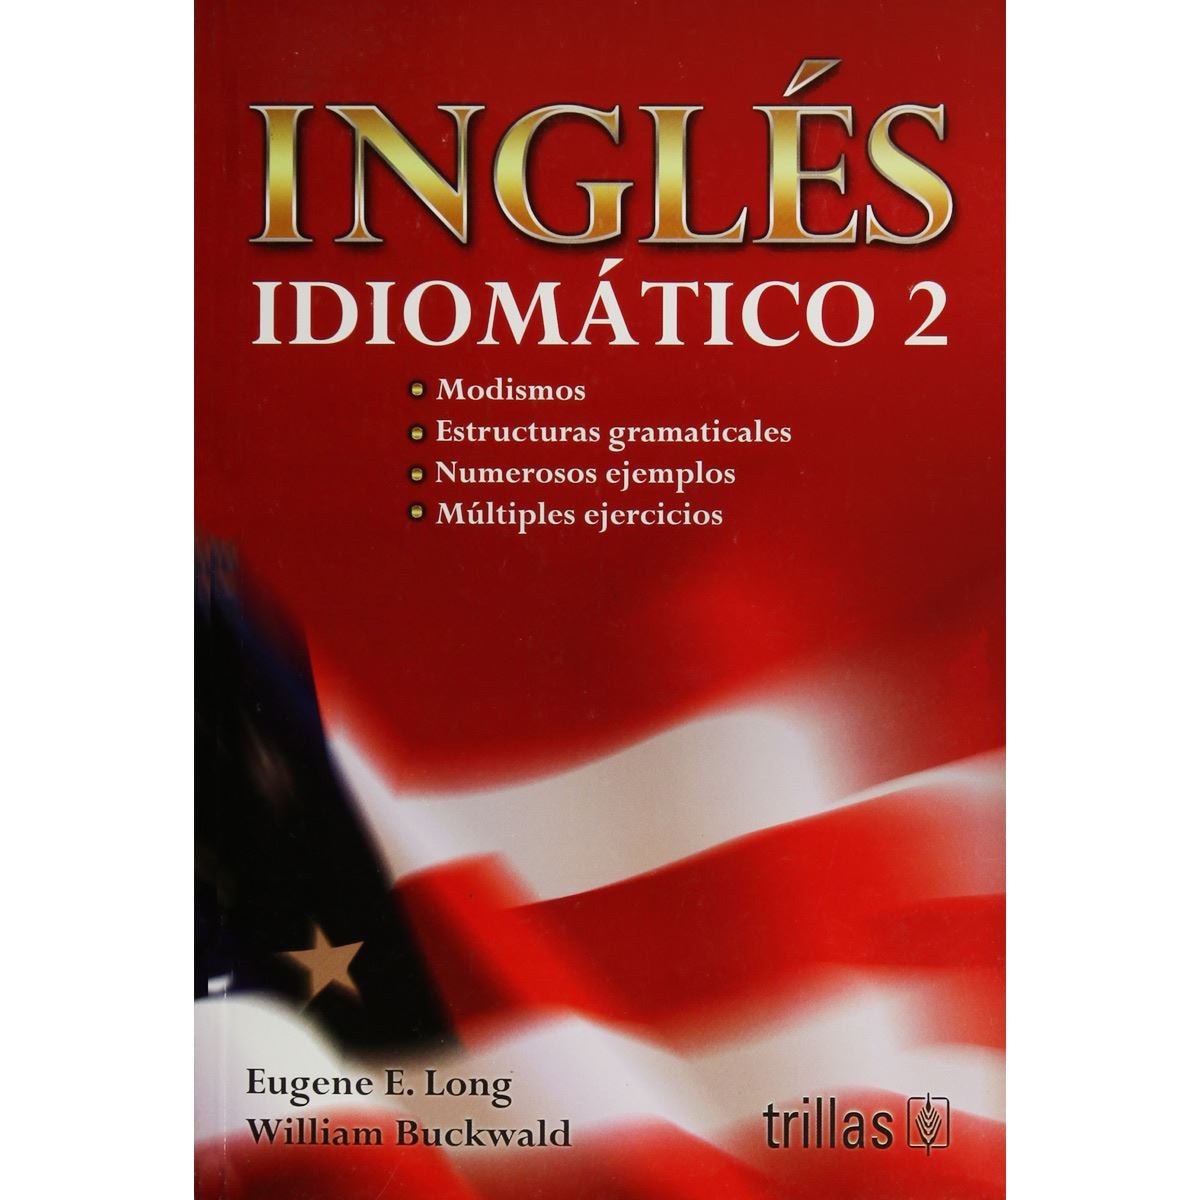 Ingles Idiomatico 2